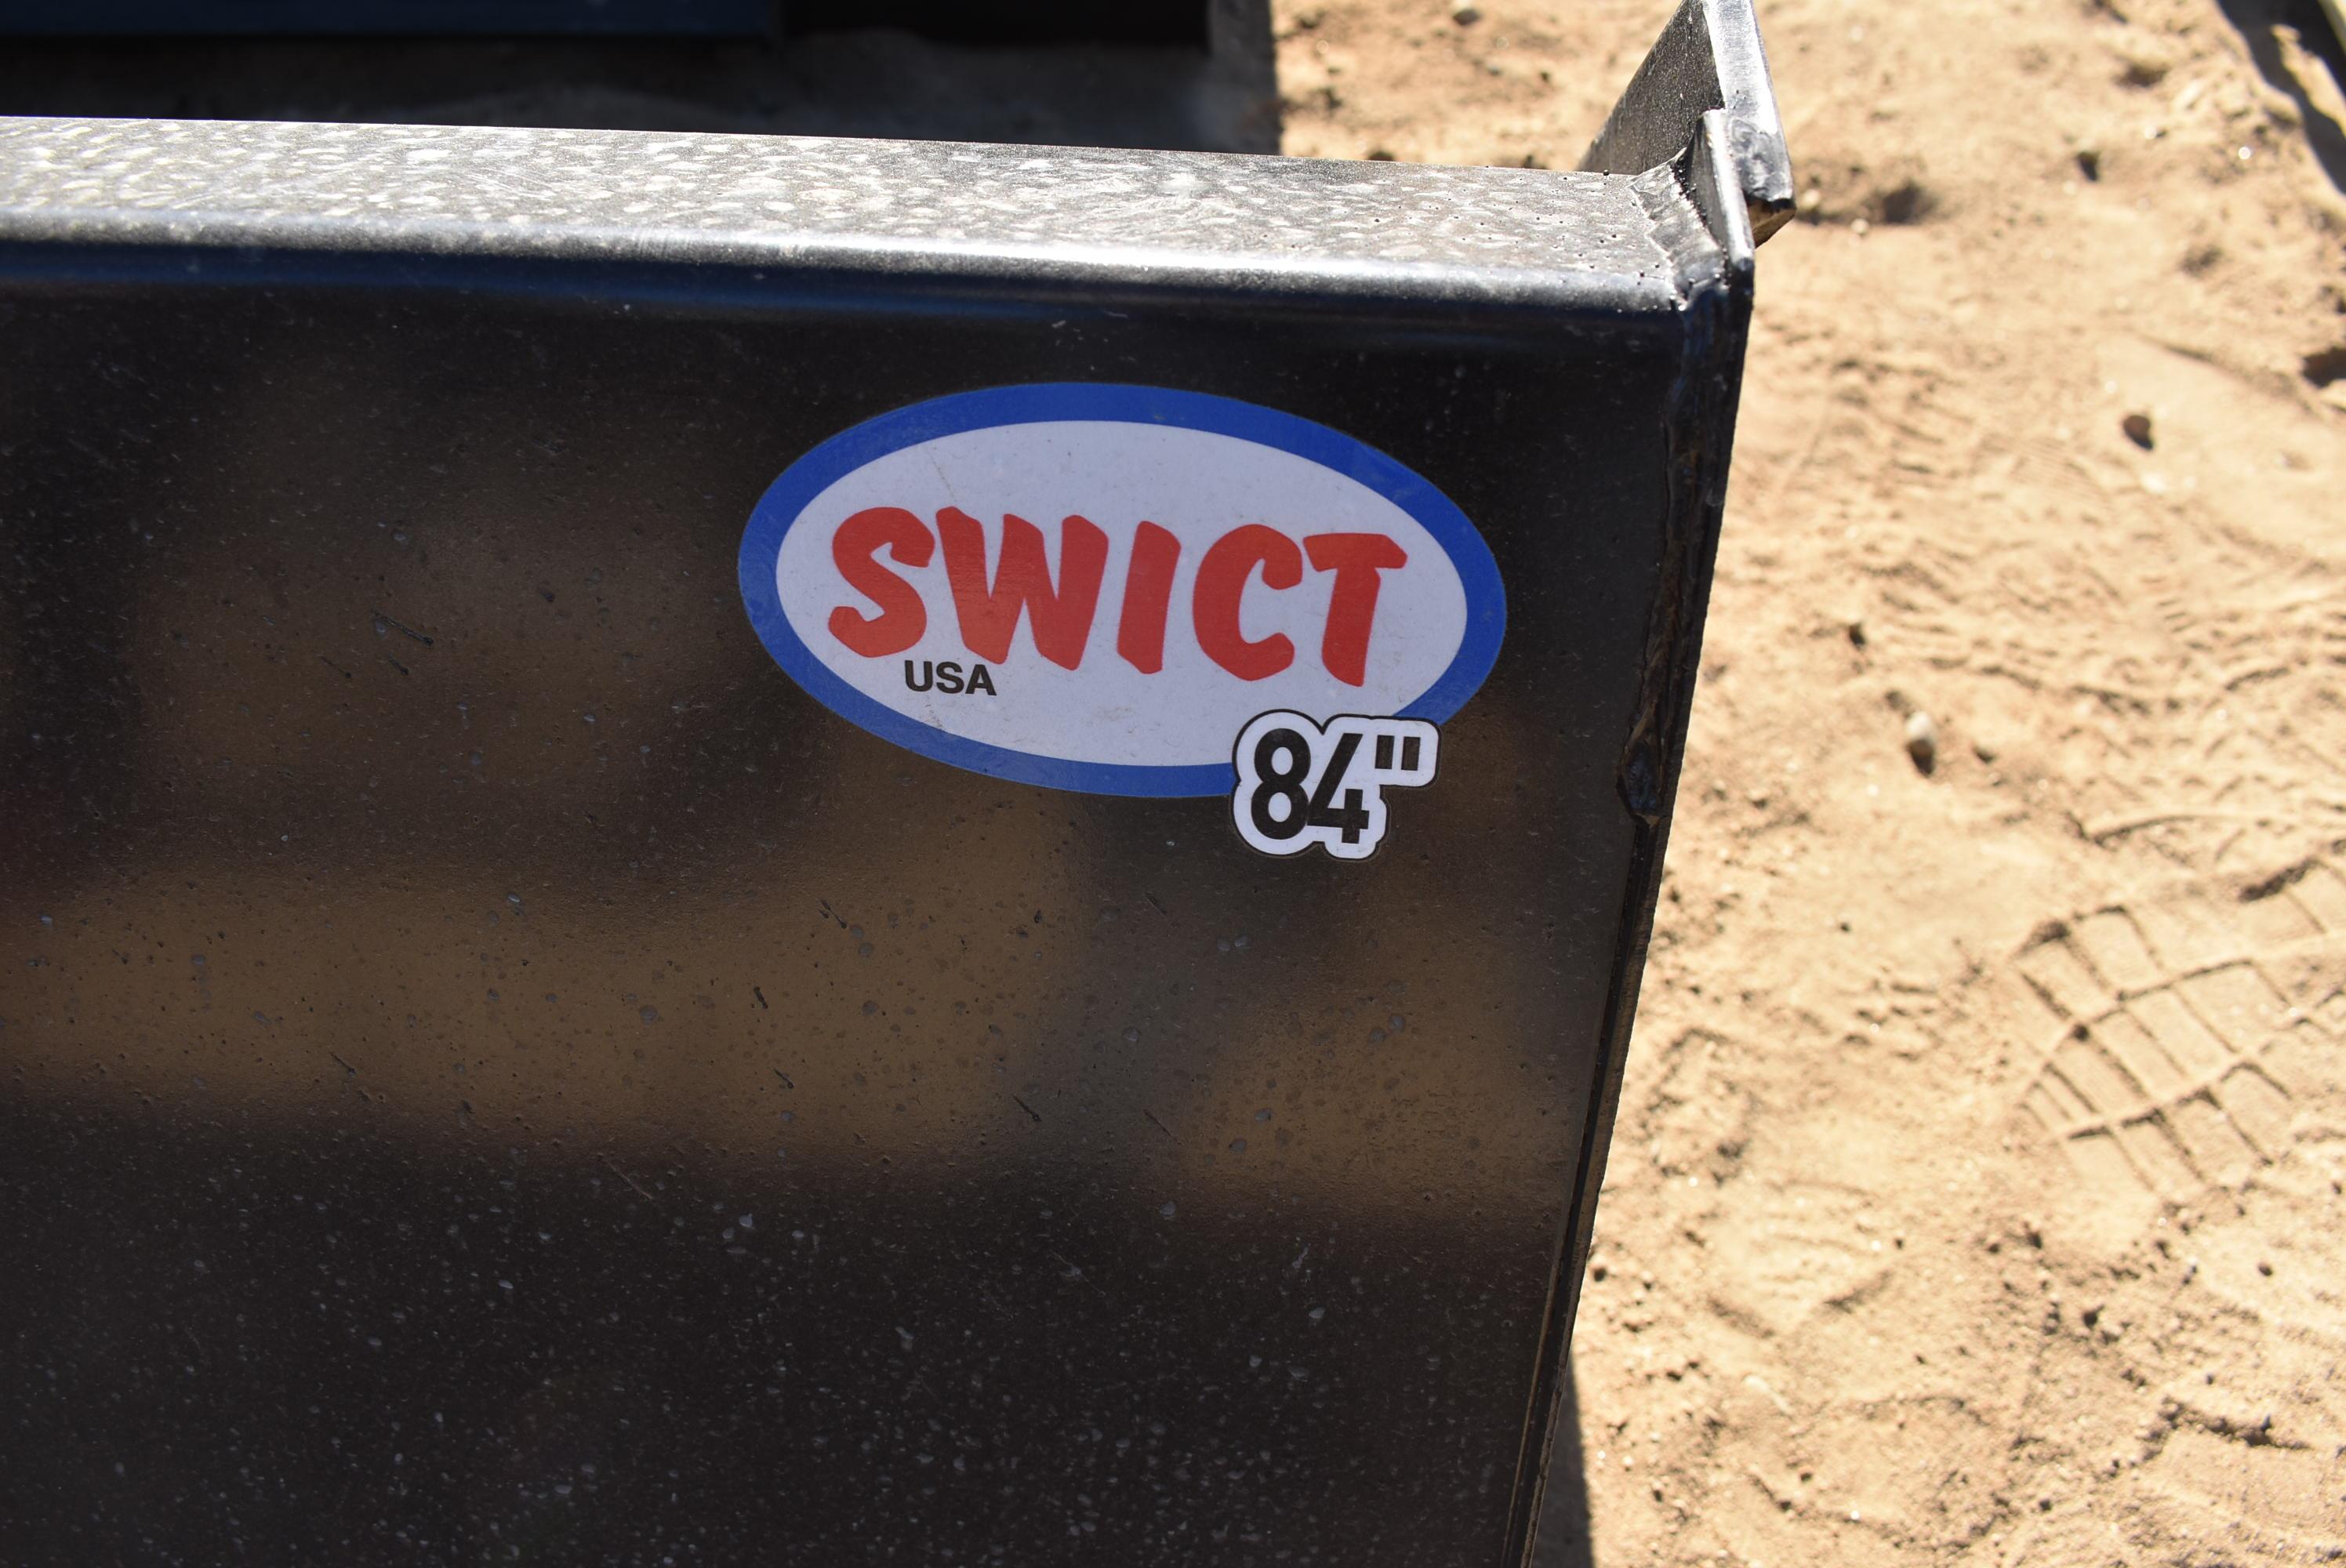 Swict 84" bucket skid steer attachment